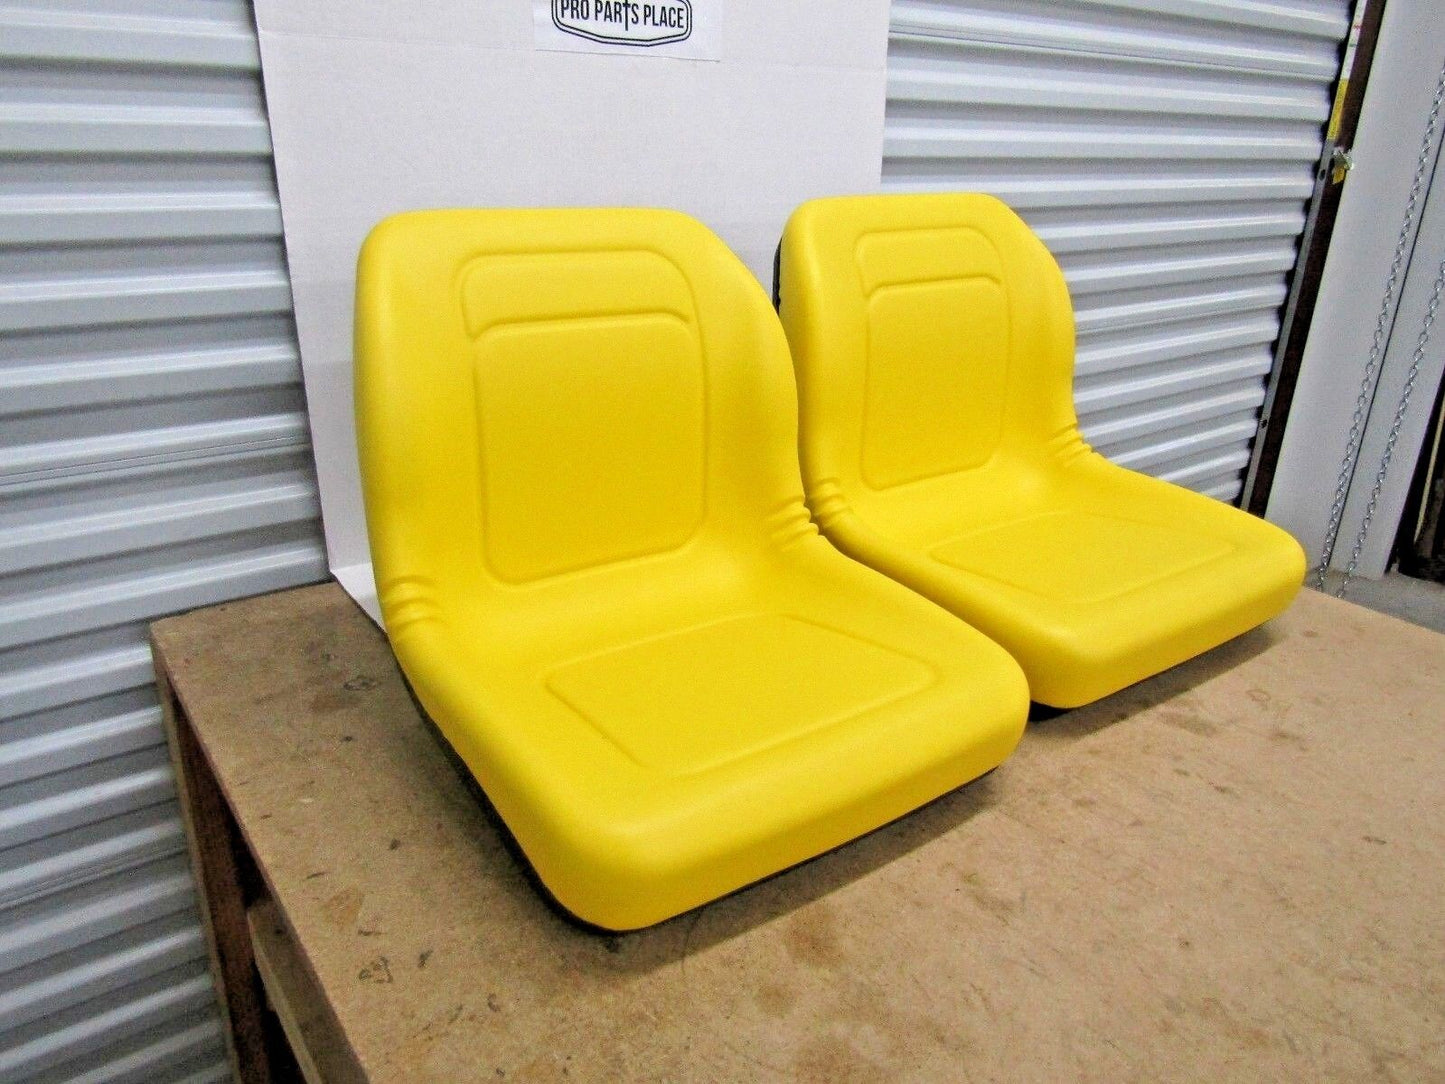 (2) new seats will fit JOHN DEERE VG11696 AM121752 GATOR 4X2 4X4 4X6 CX DIESEL